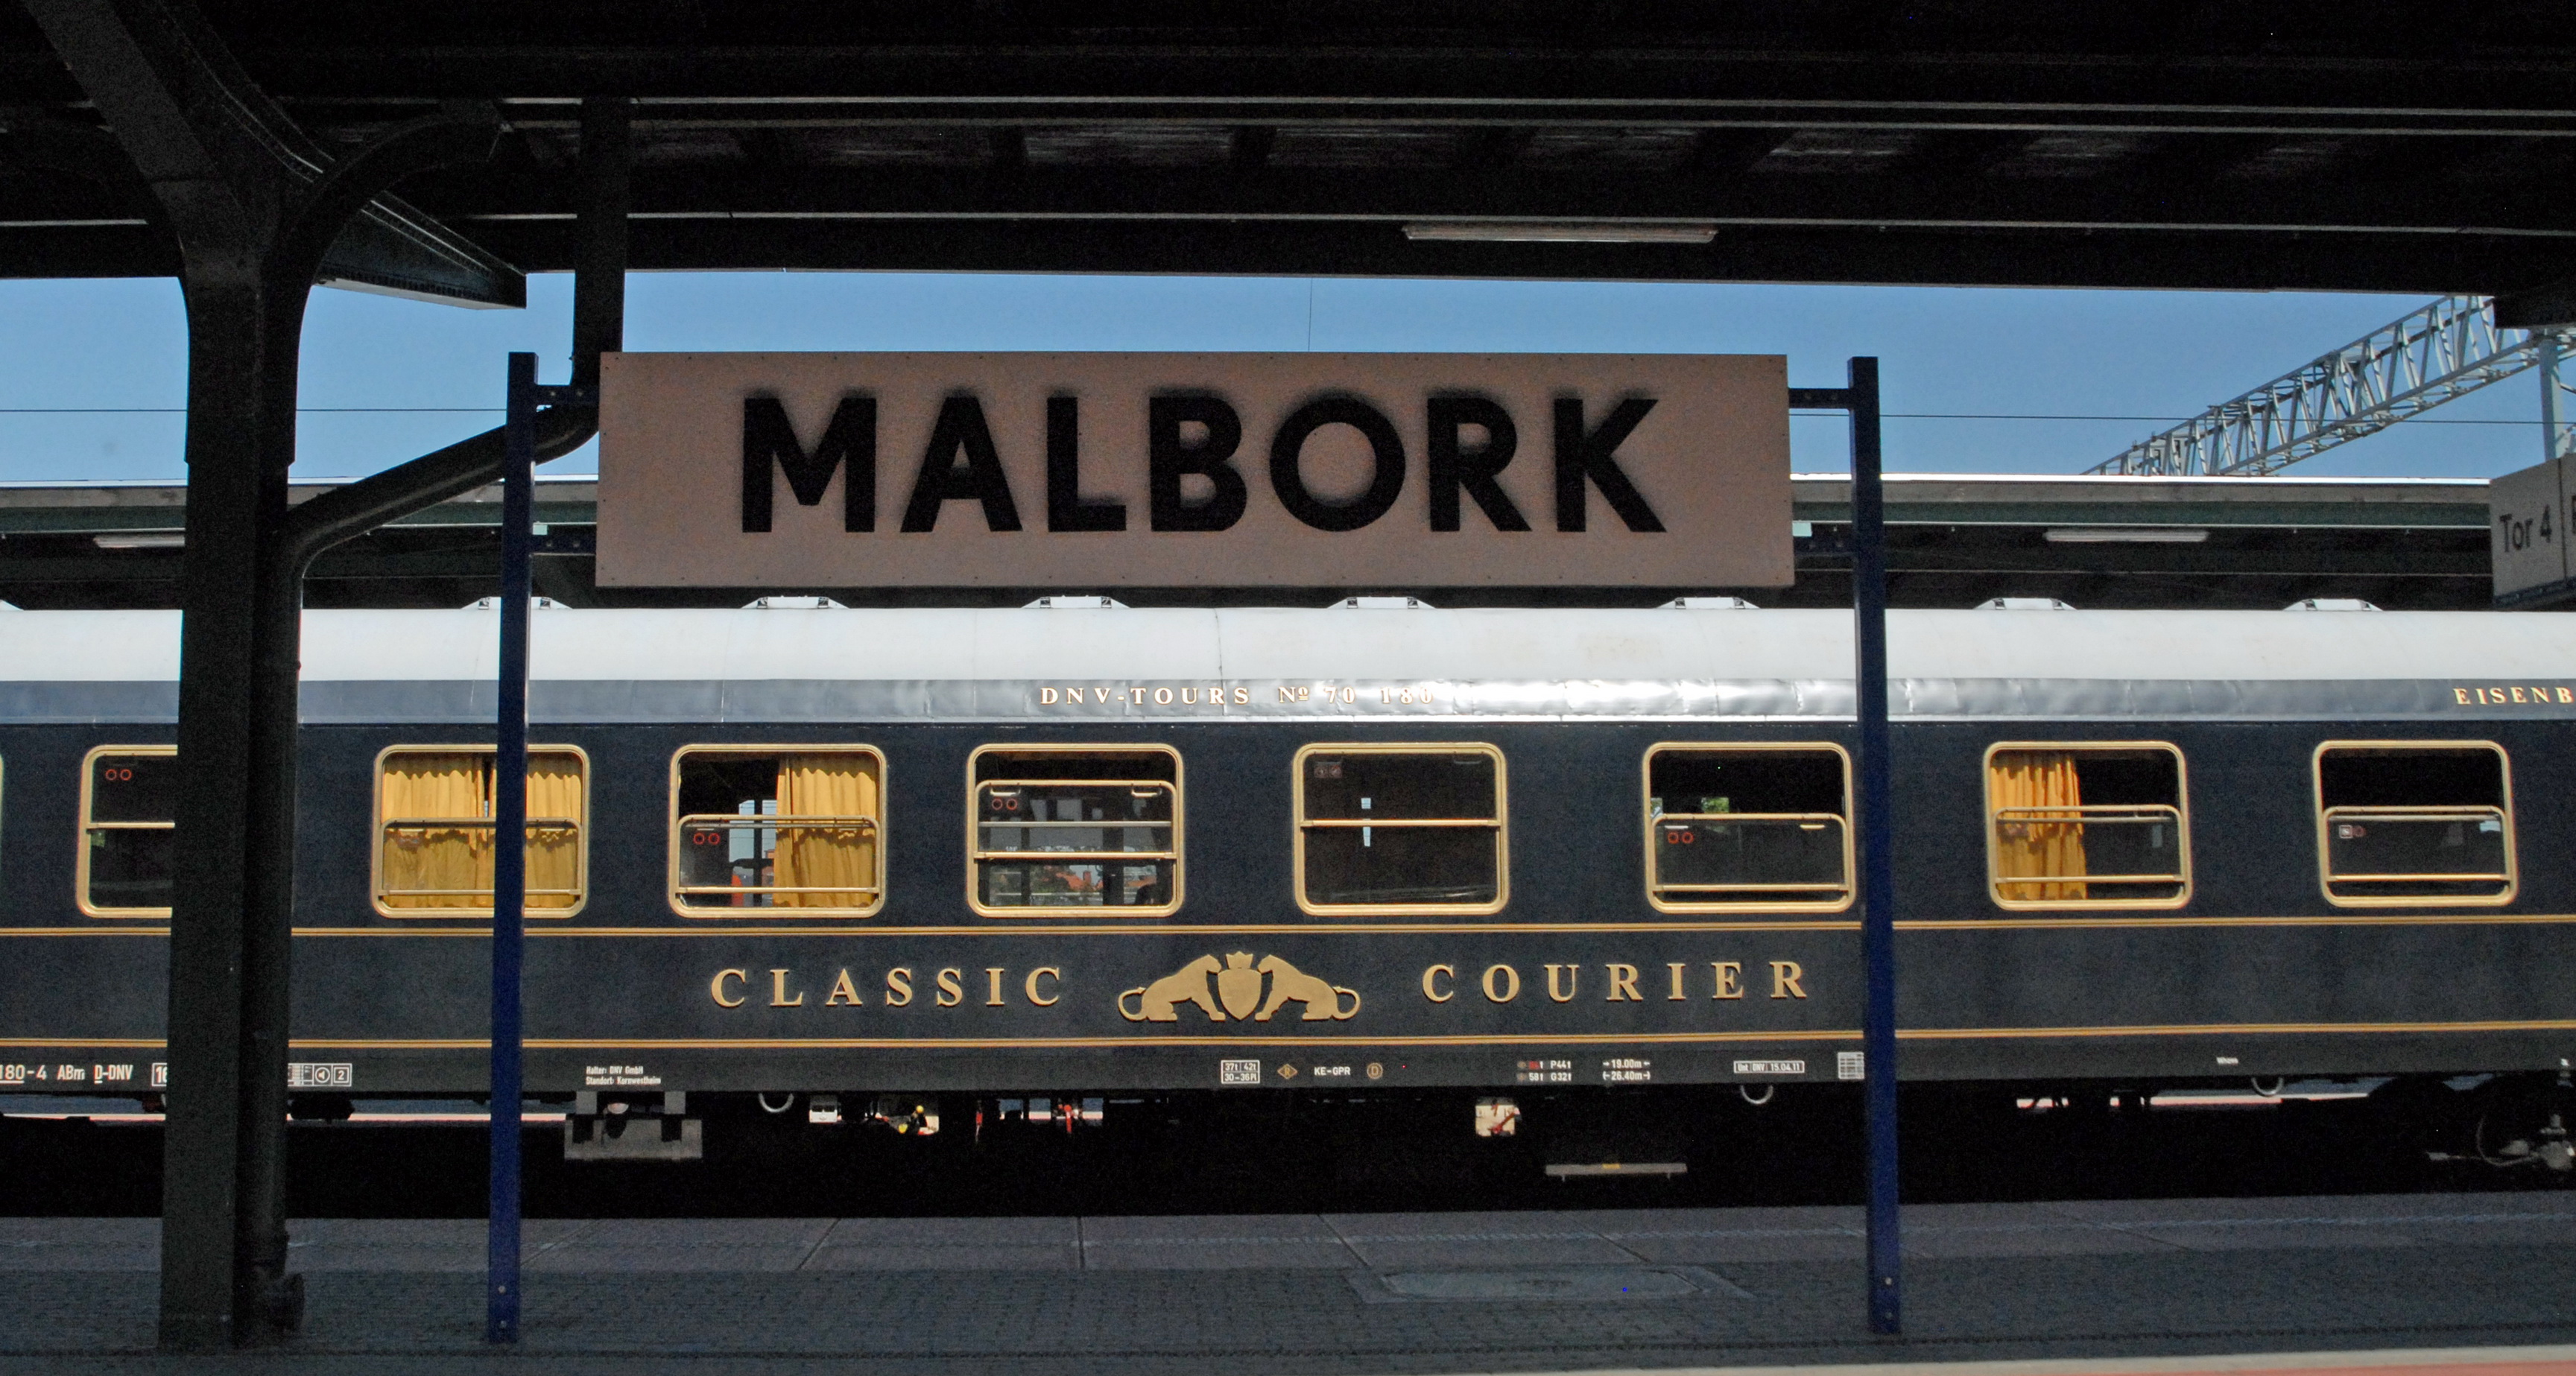 Im Bahnhof Malbork, dem einstigen Marienburg. © Maike Grunwald 